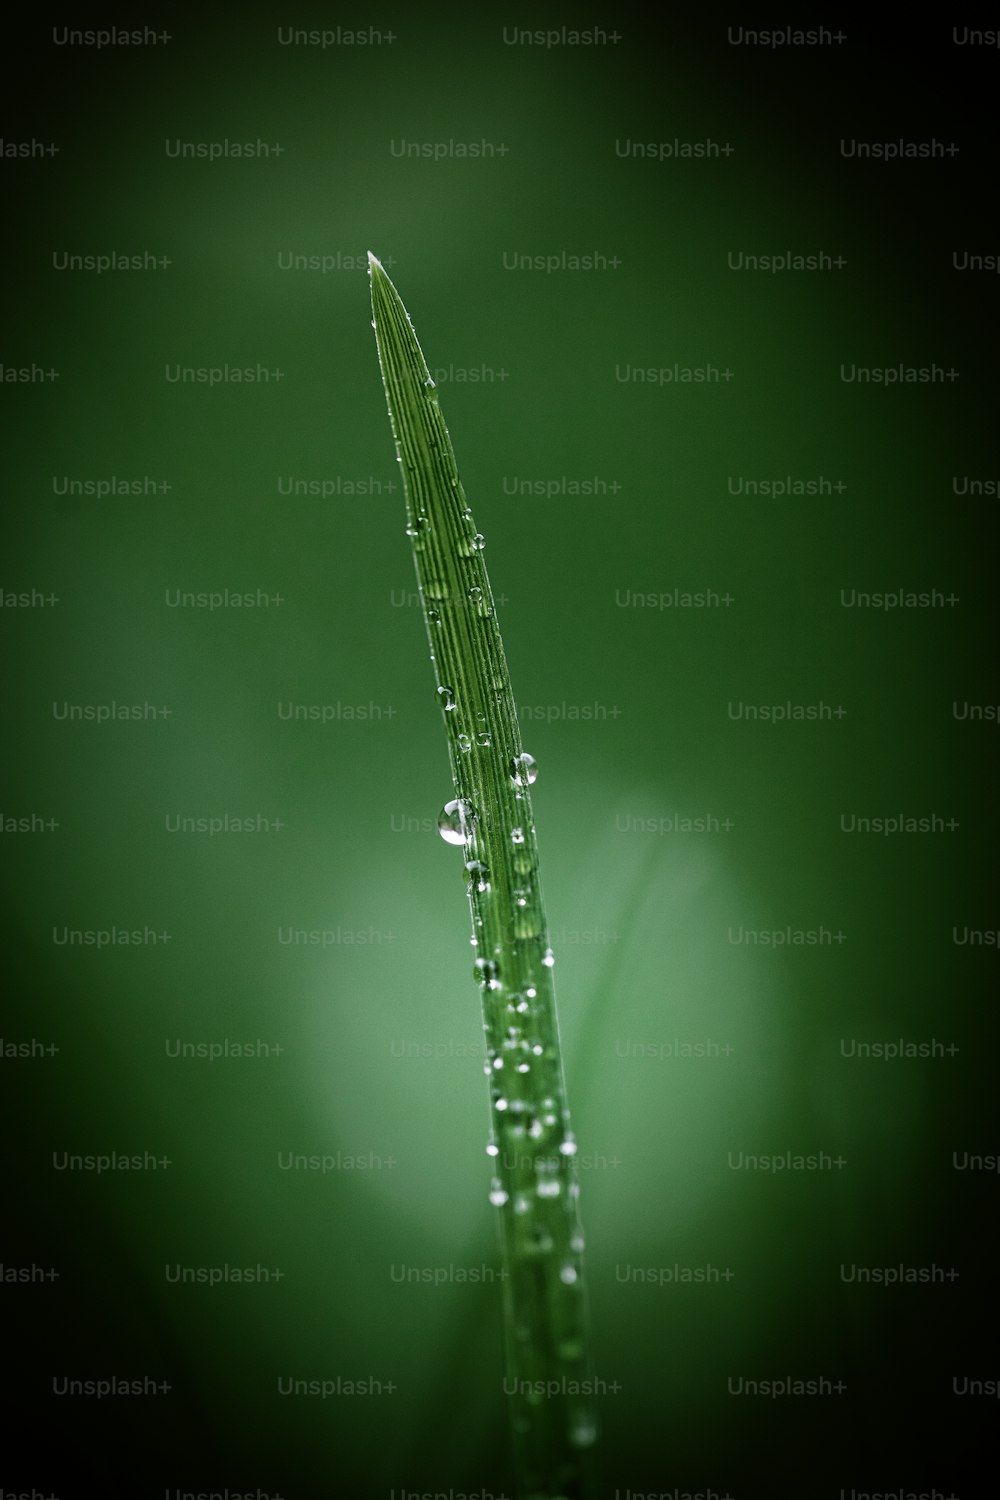 una planta verde con gotas de agua